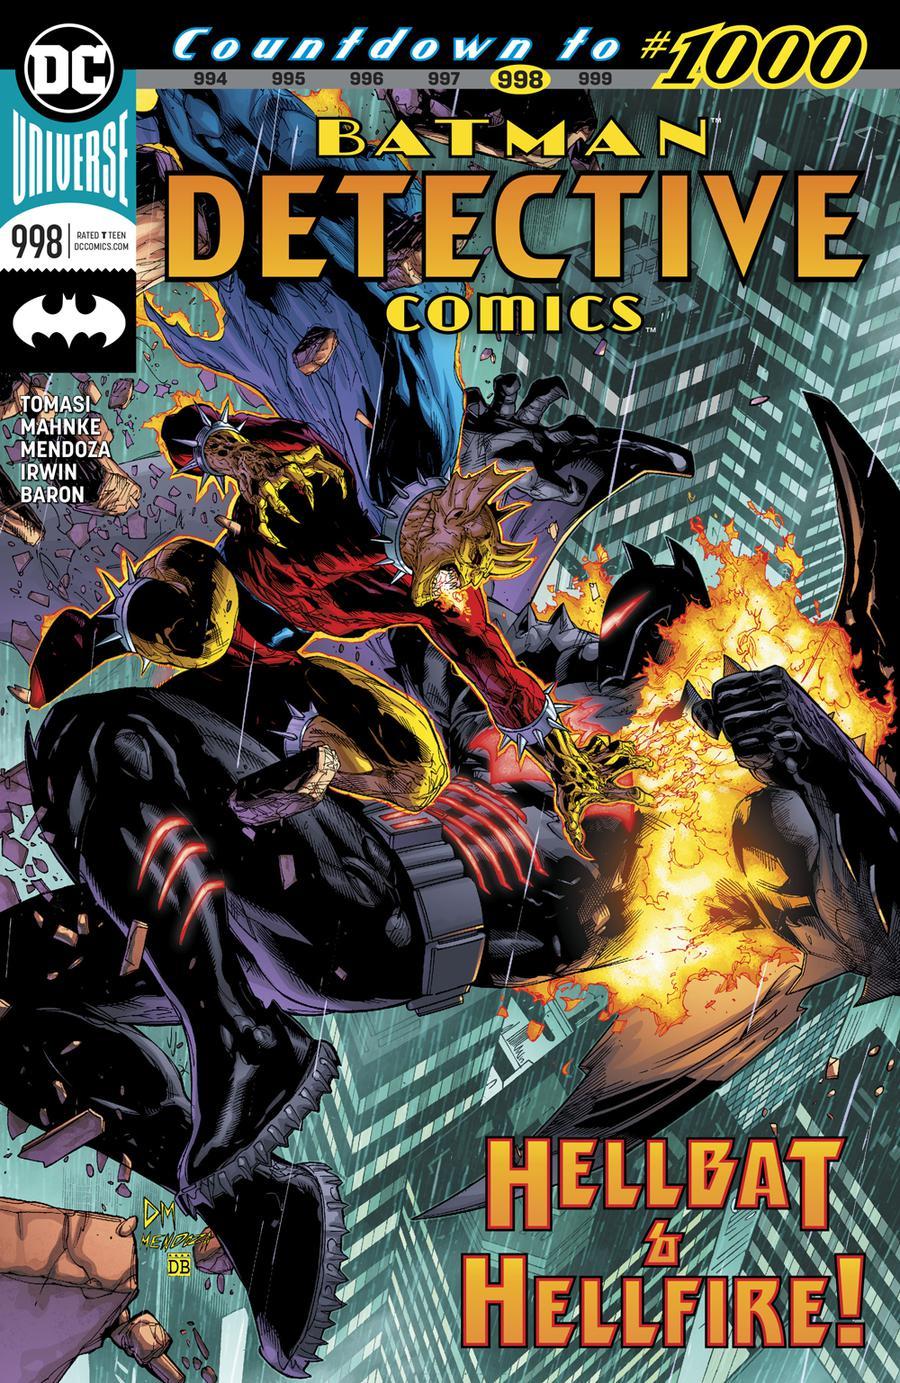 Detective Comics Vol. 2 #998